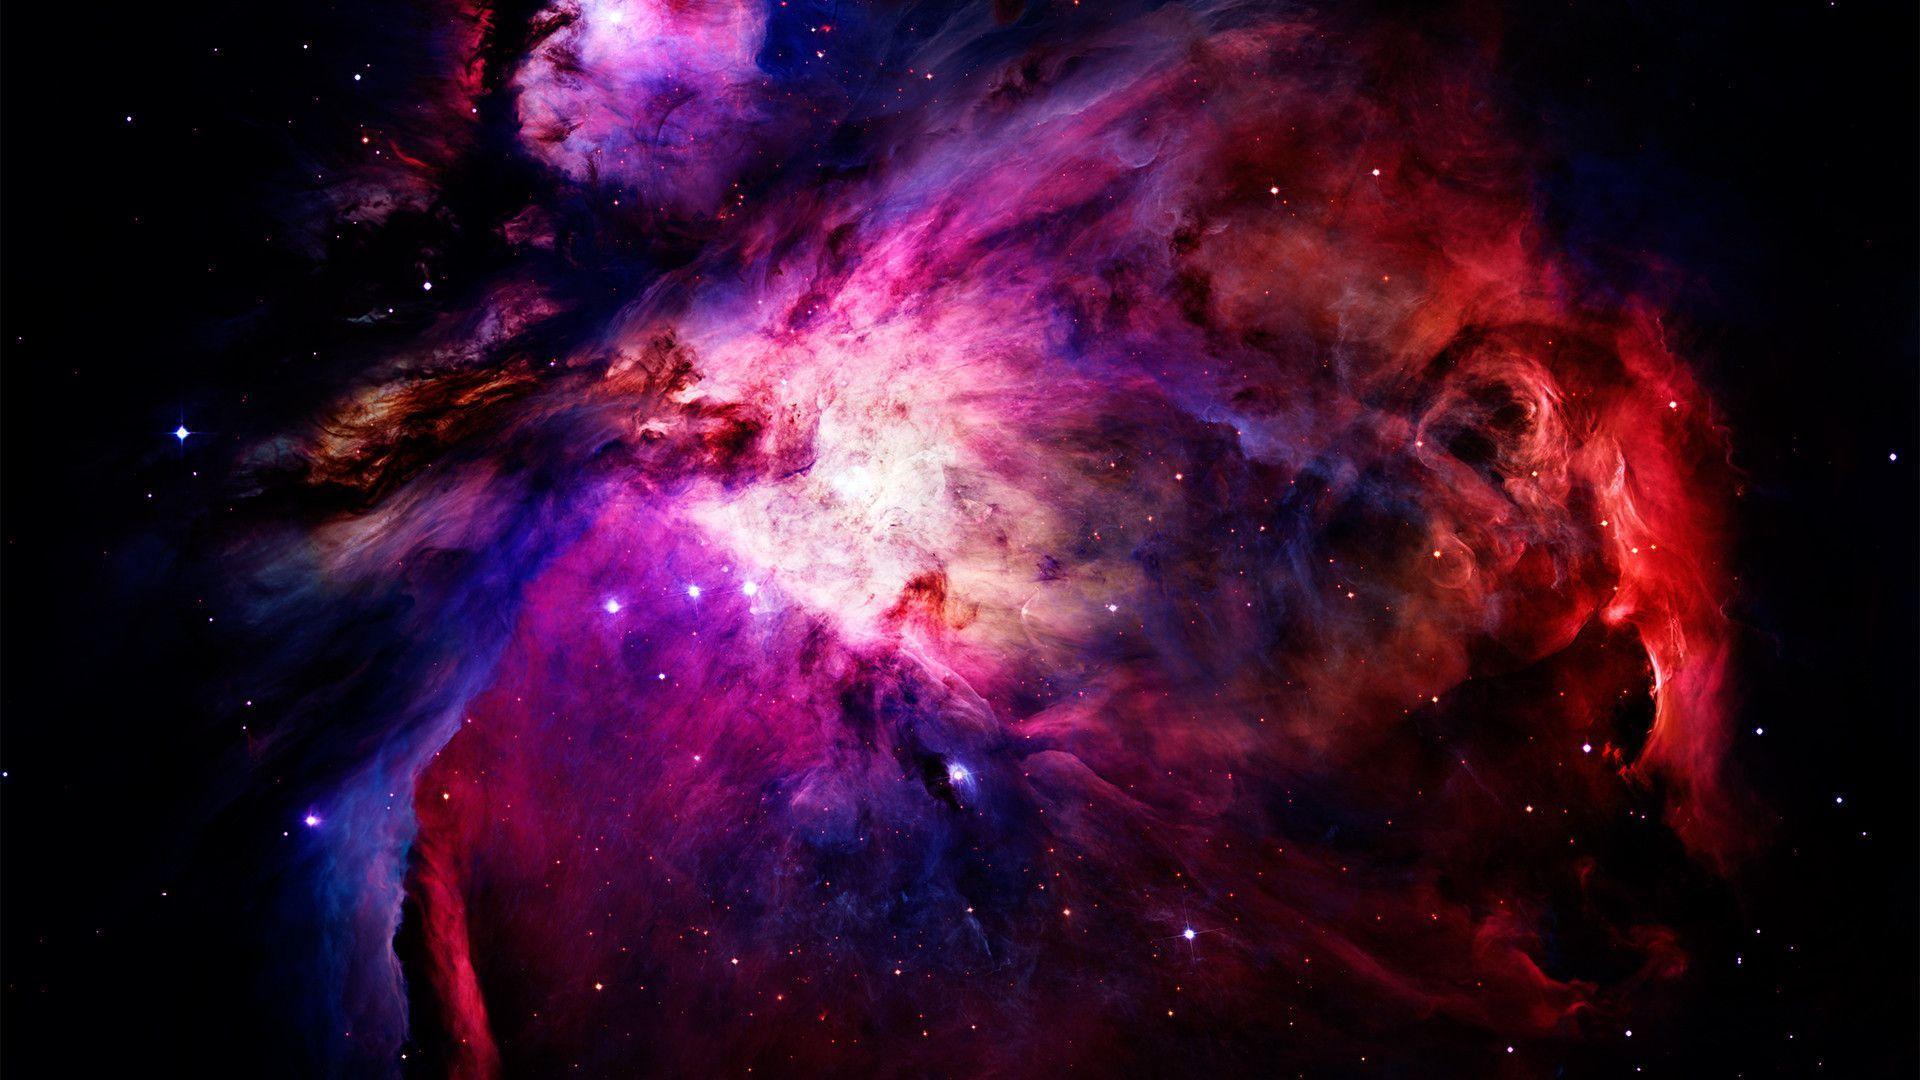 Amazing Nebula Wallpaper 10388 1920x1080 px